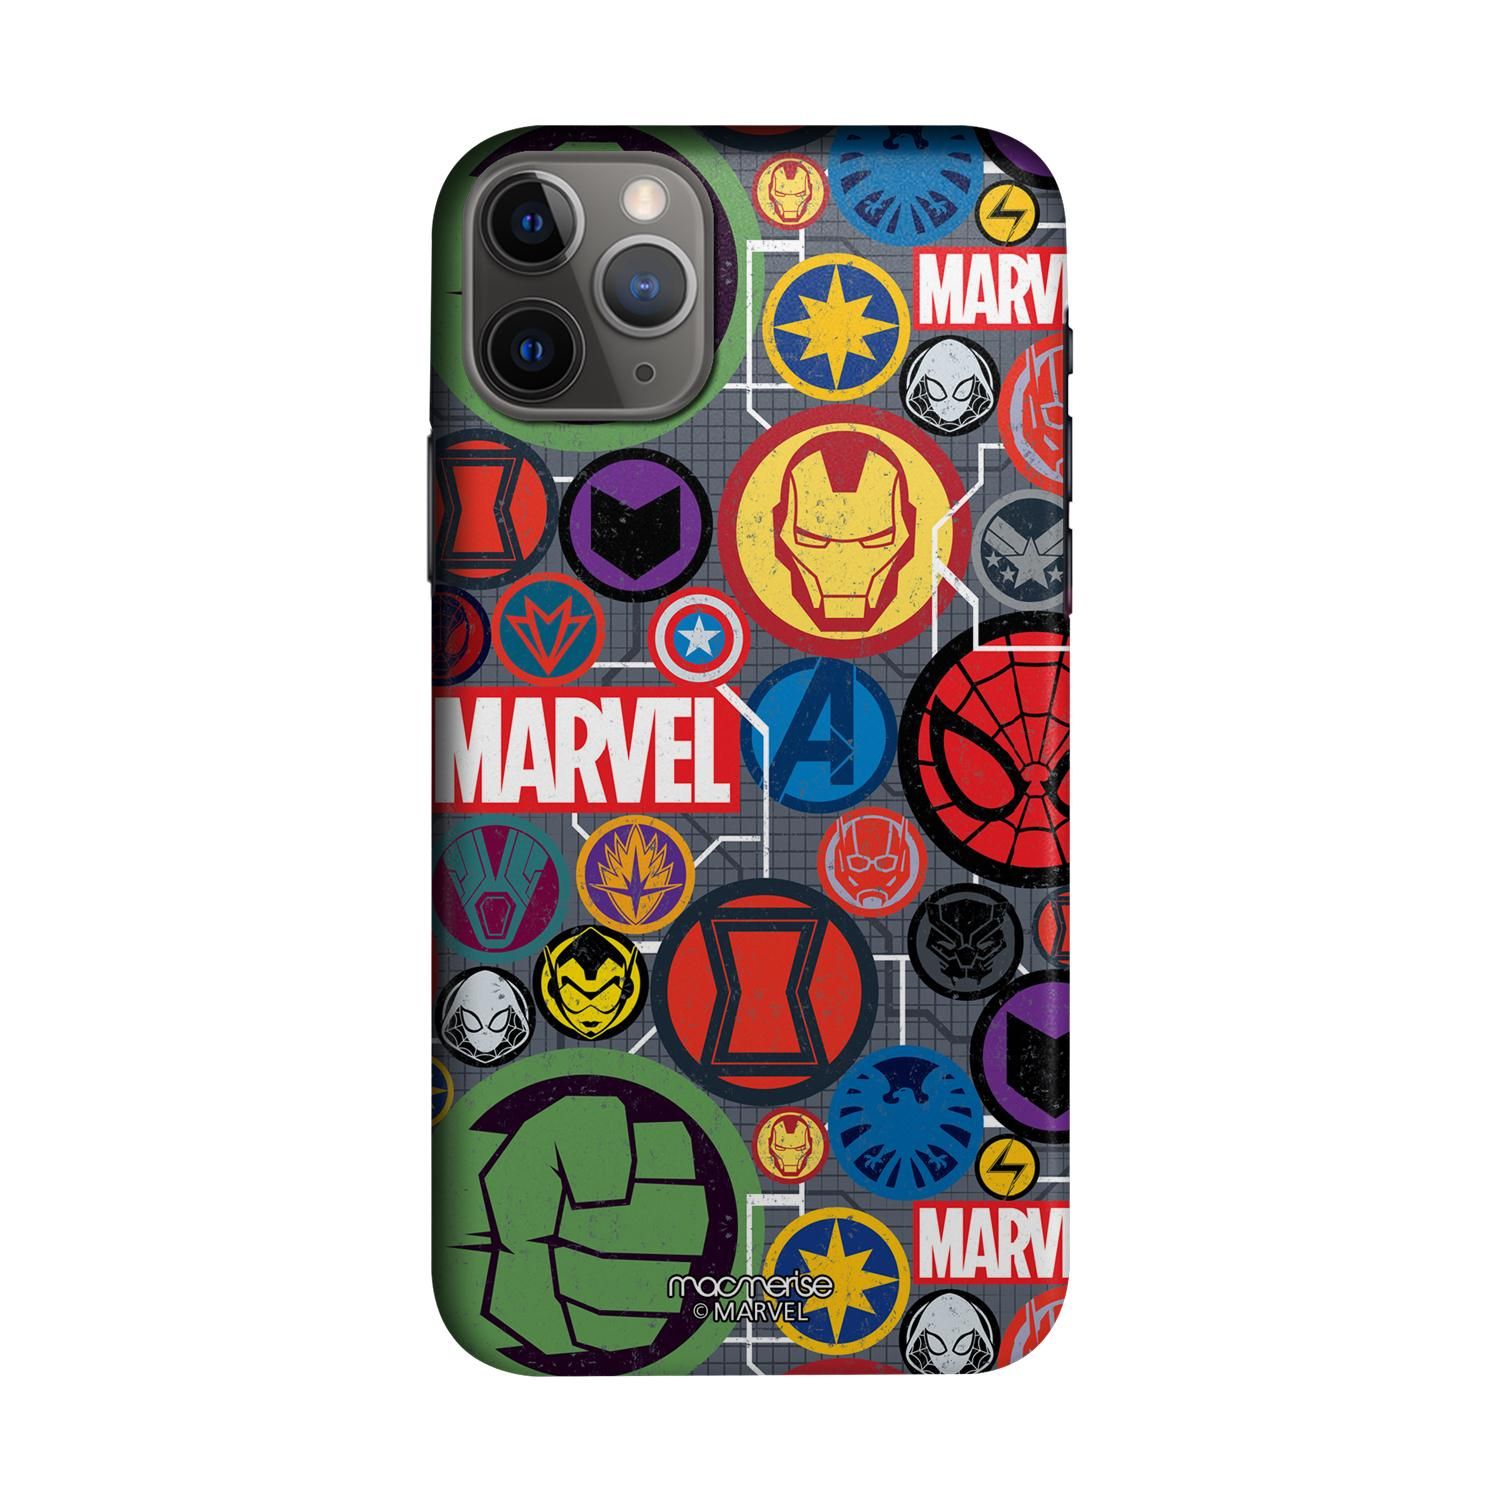 Buy Marvel Iconic Mashup - Sleek Phone Case for iPhone 11 Pro Online